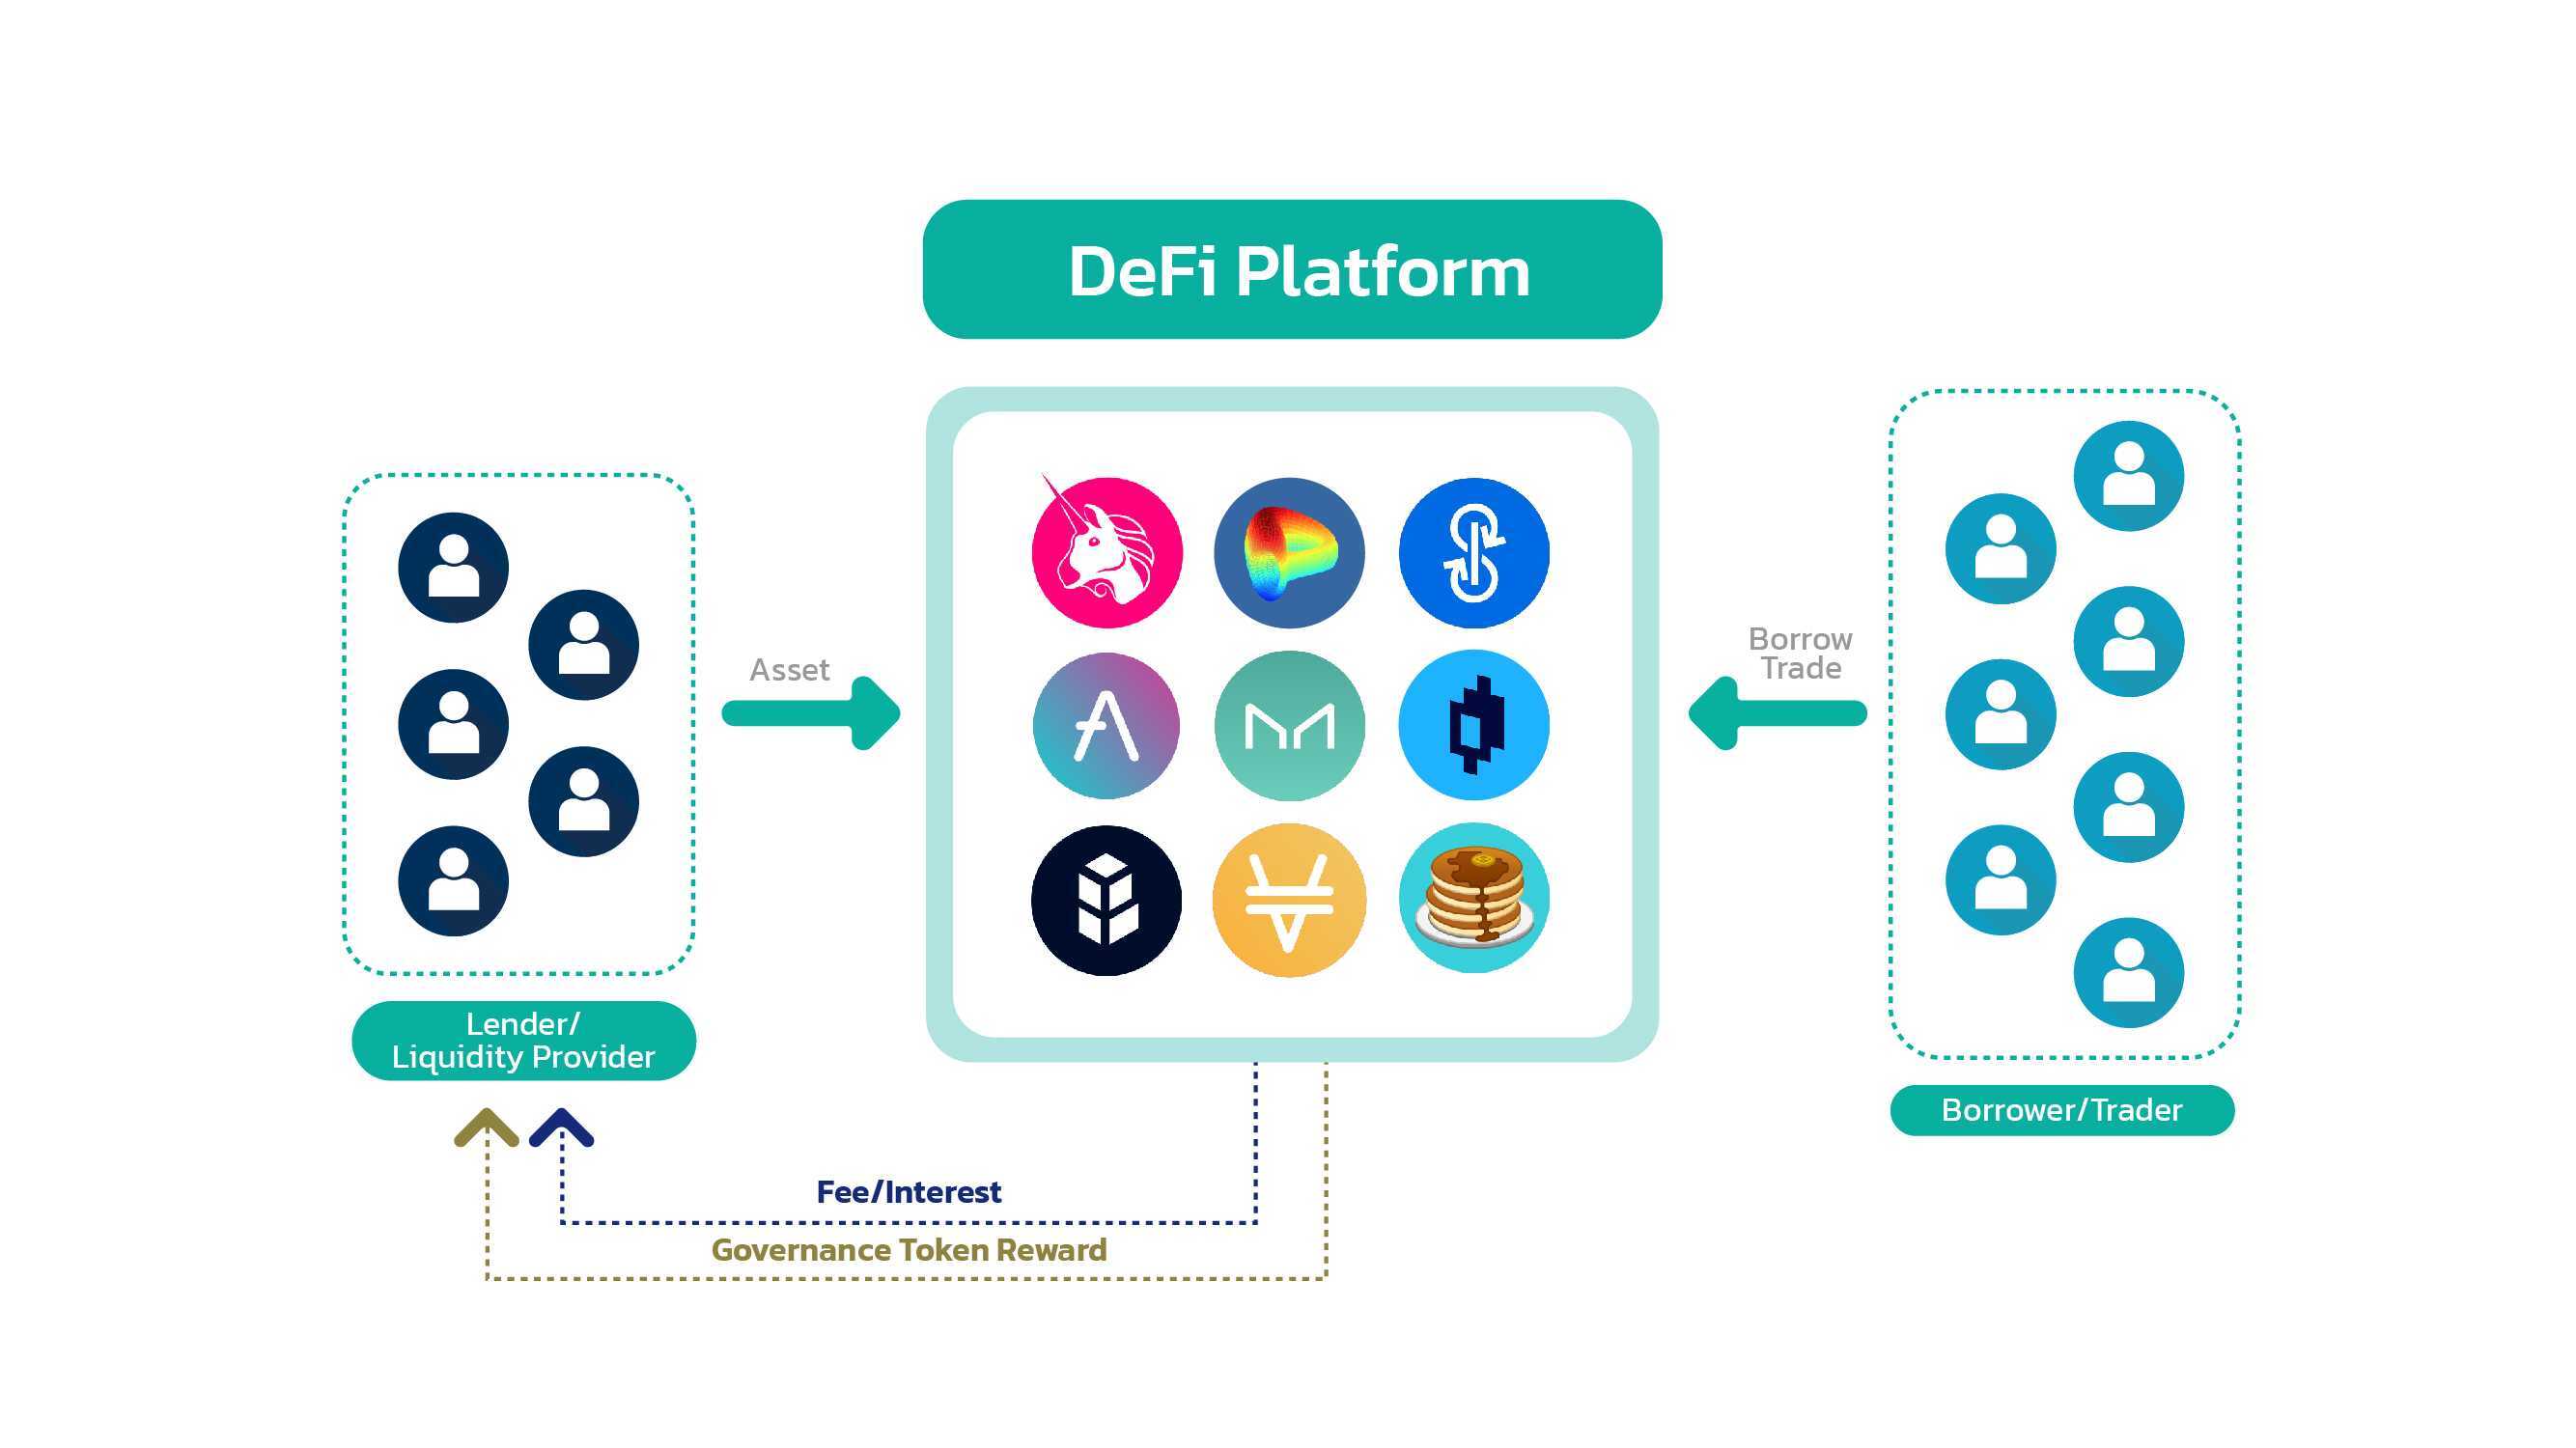 DeFi platform